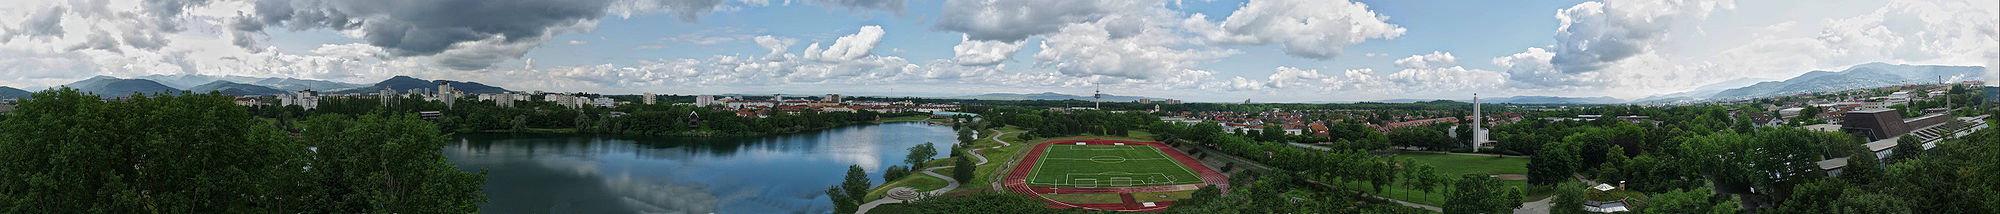 360° Panoramabild von der Plattform des Seeparkturms. Links im Vordergrund Betzenhausen, in der Mitte der Seepark, rechts im Vordergrund Mooswald